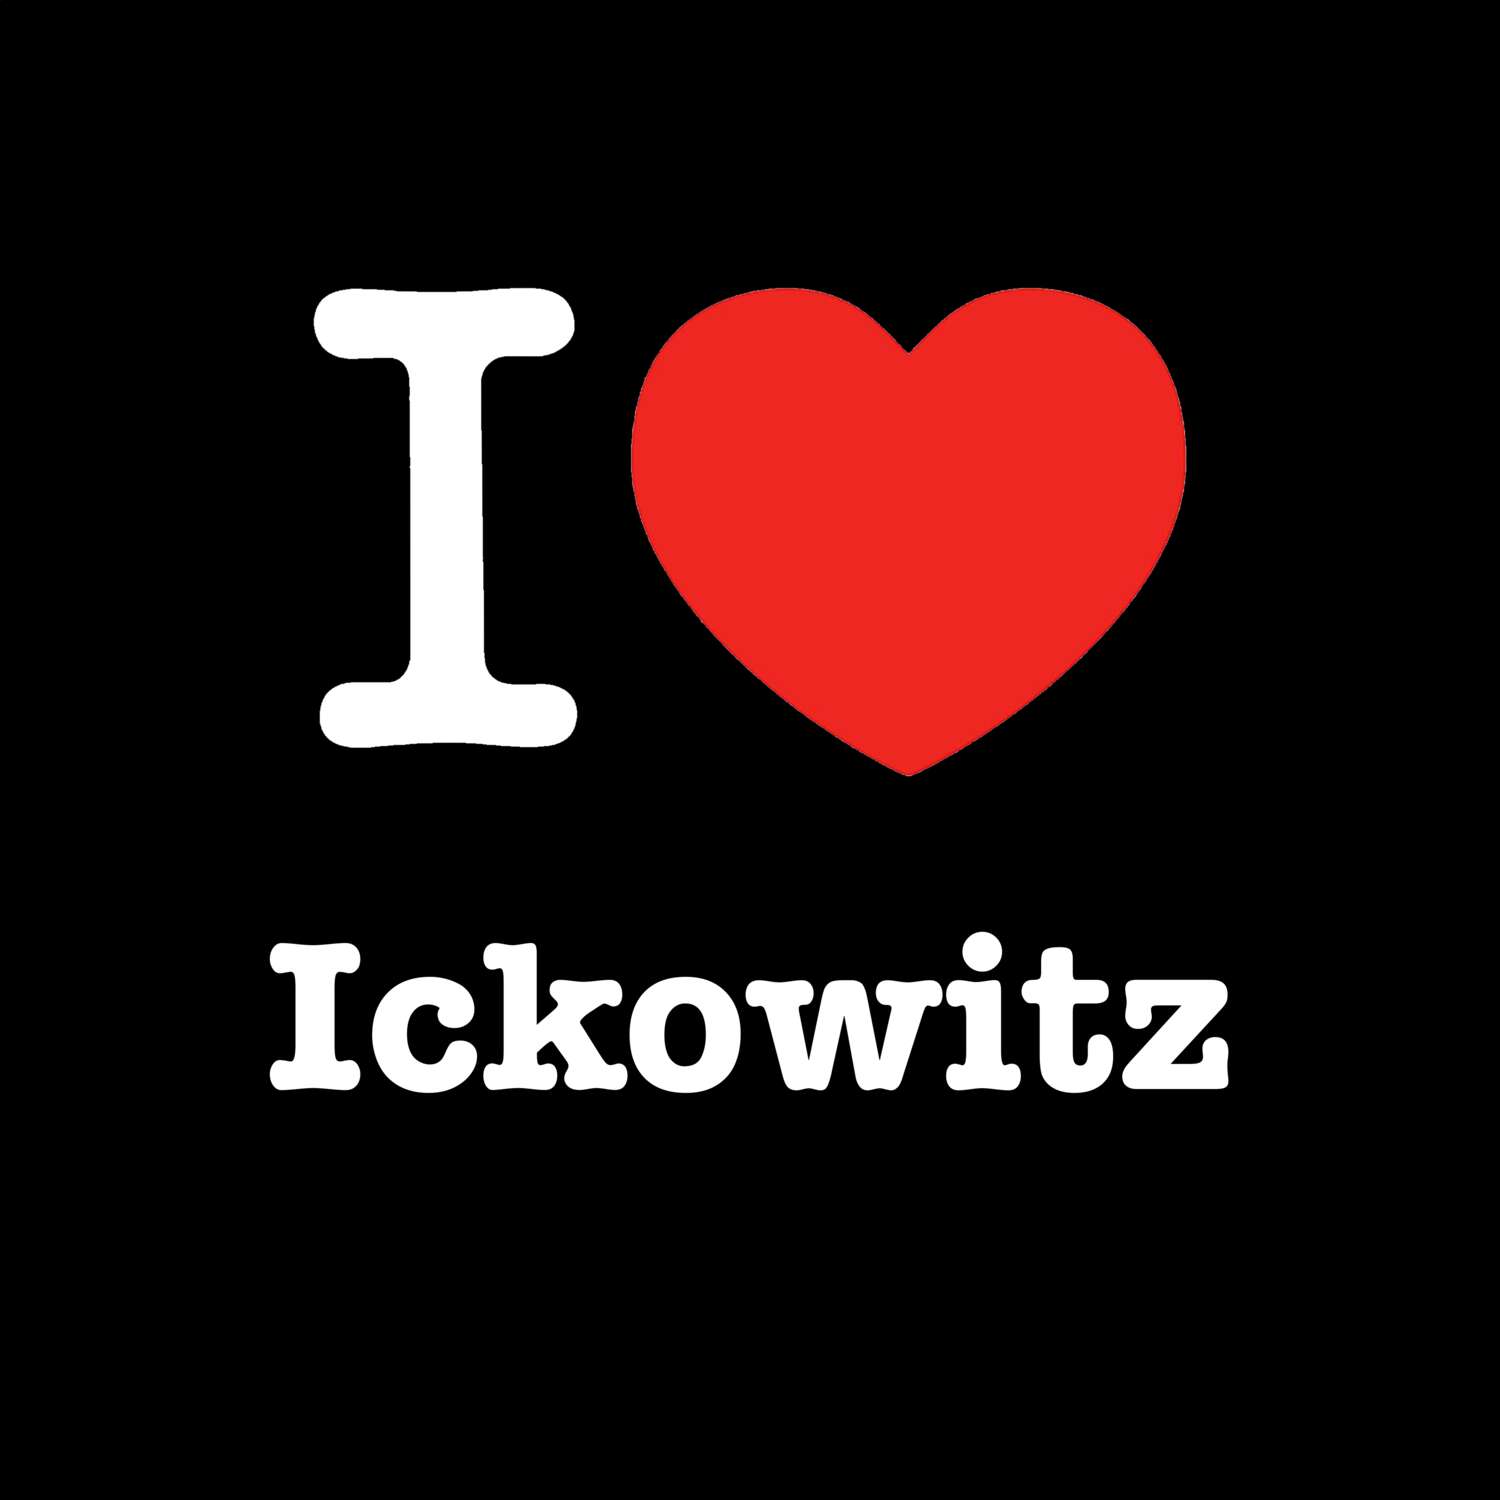 Ickowitz T-Shirt »I love«